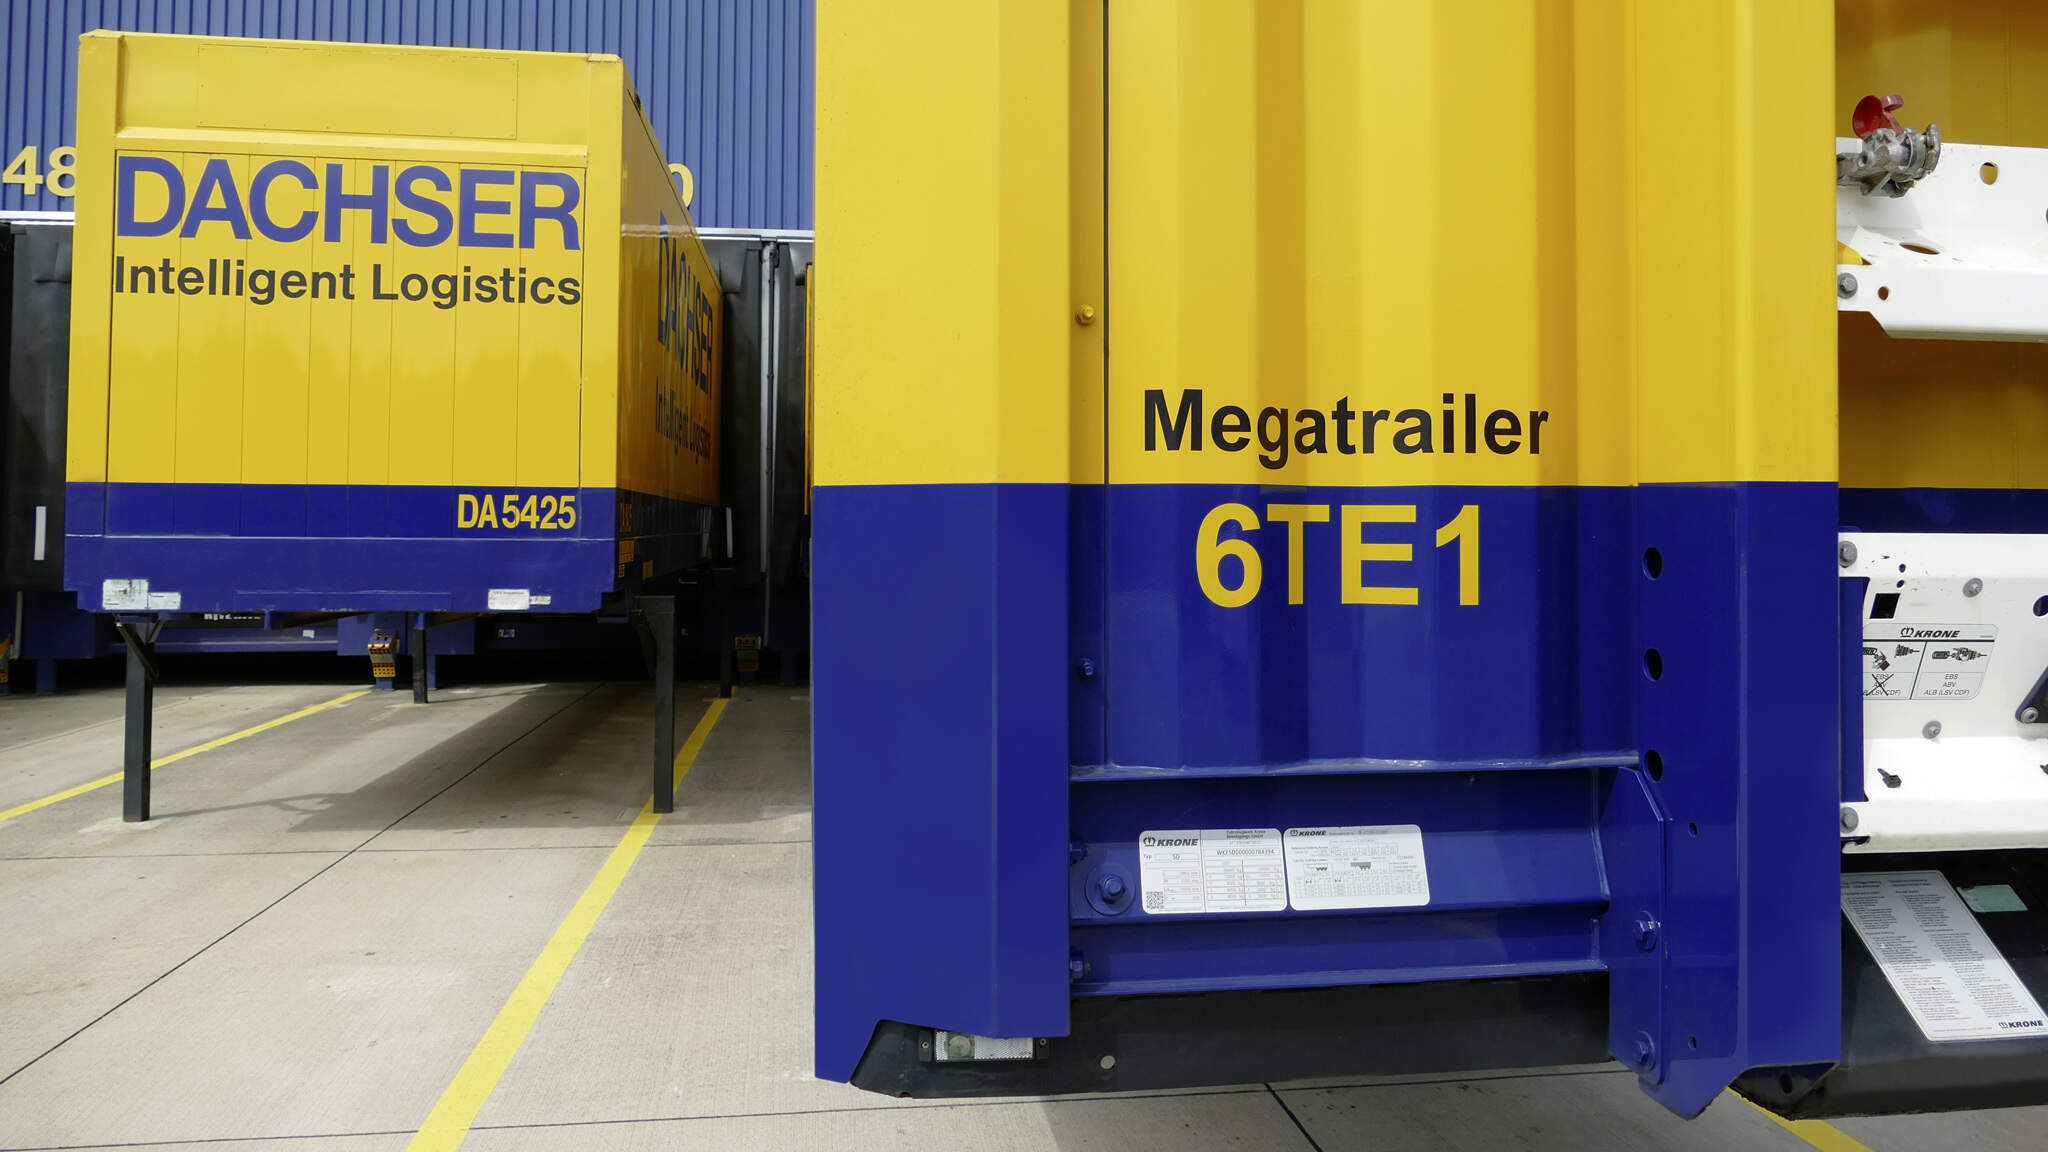 Løpende utskiftning av semitrailere i forretningsenheten European Logistics optimerer kapasitetsutnyttelsen og reduserer klimaavtrykket fra transporten.